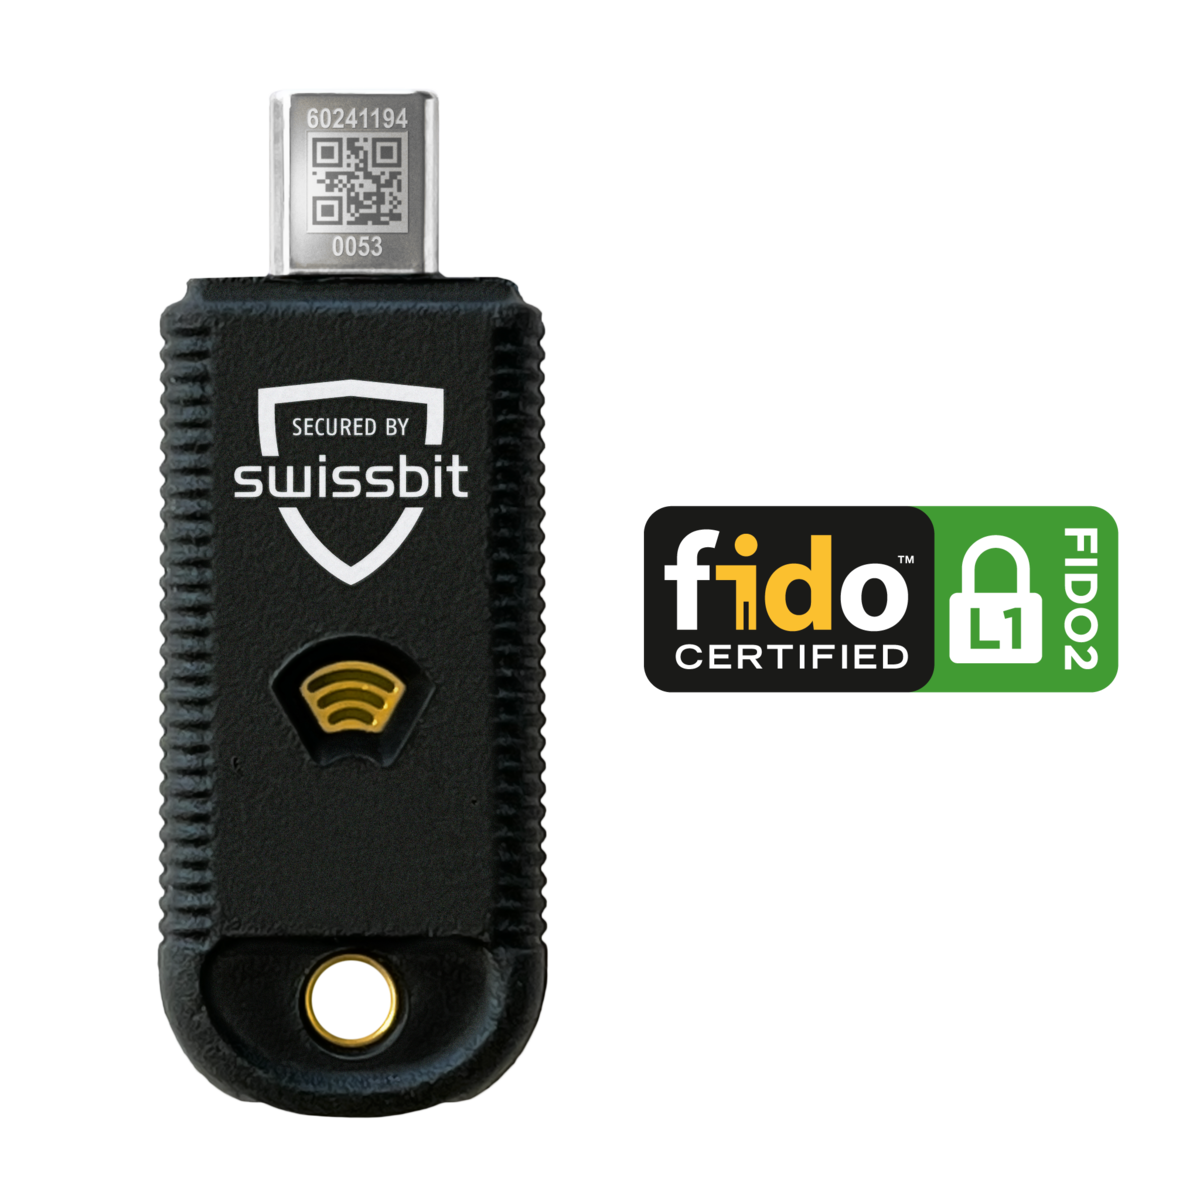 FIDO certified security key iShield Key Pro USB-A / NFC